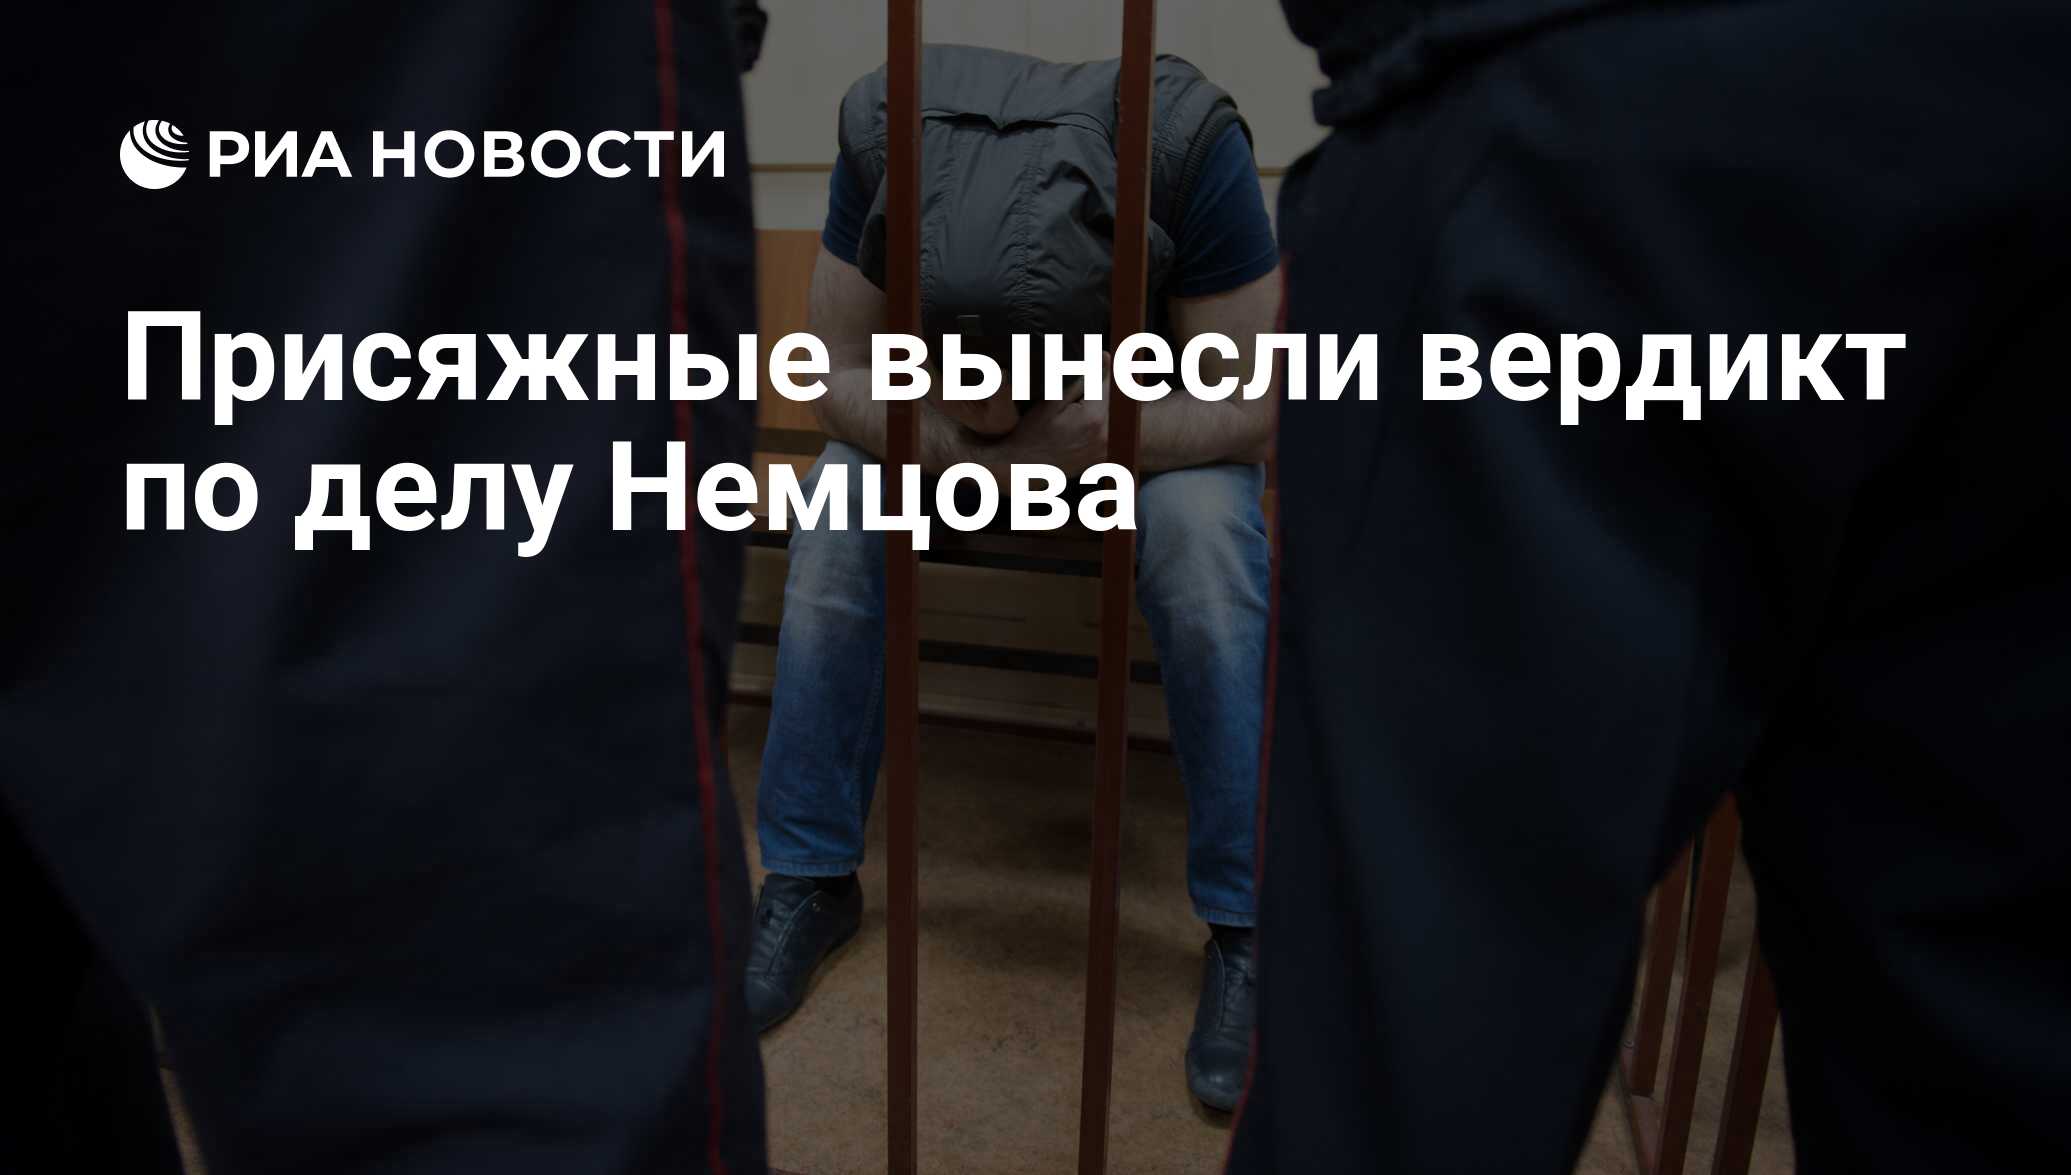 Уголовное дело Немцова фото. Присяжные выносят вердикт